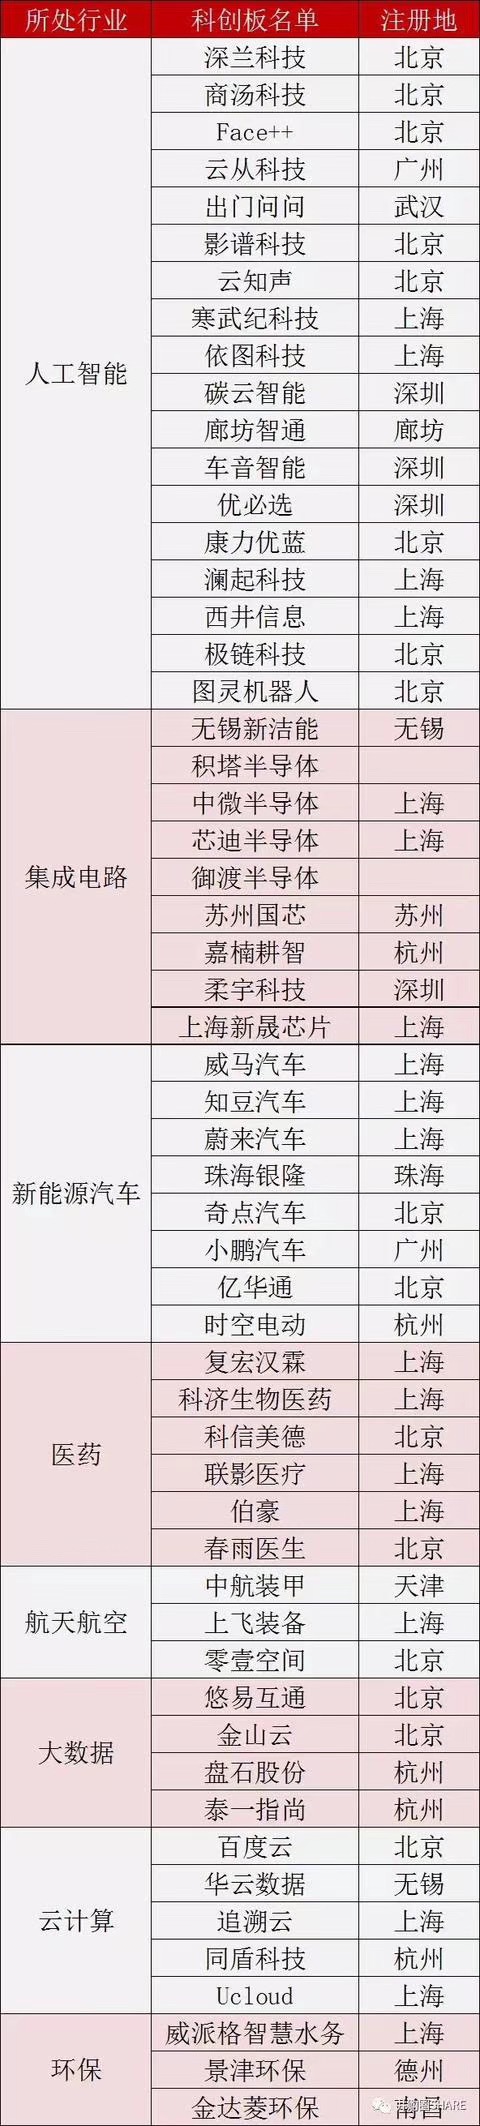 【最新】上海科创板首批挂牌企业名单（56家） 科创板股票有哪些